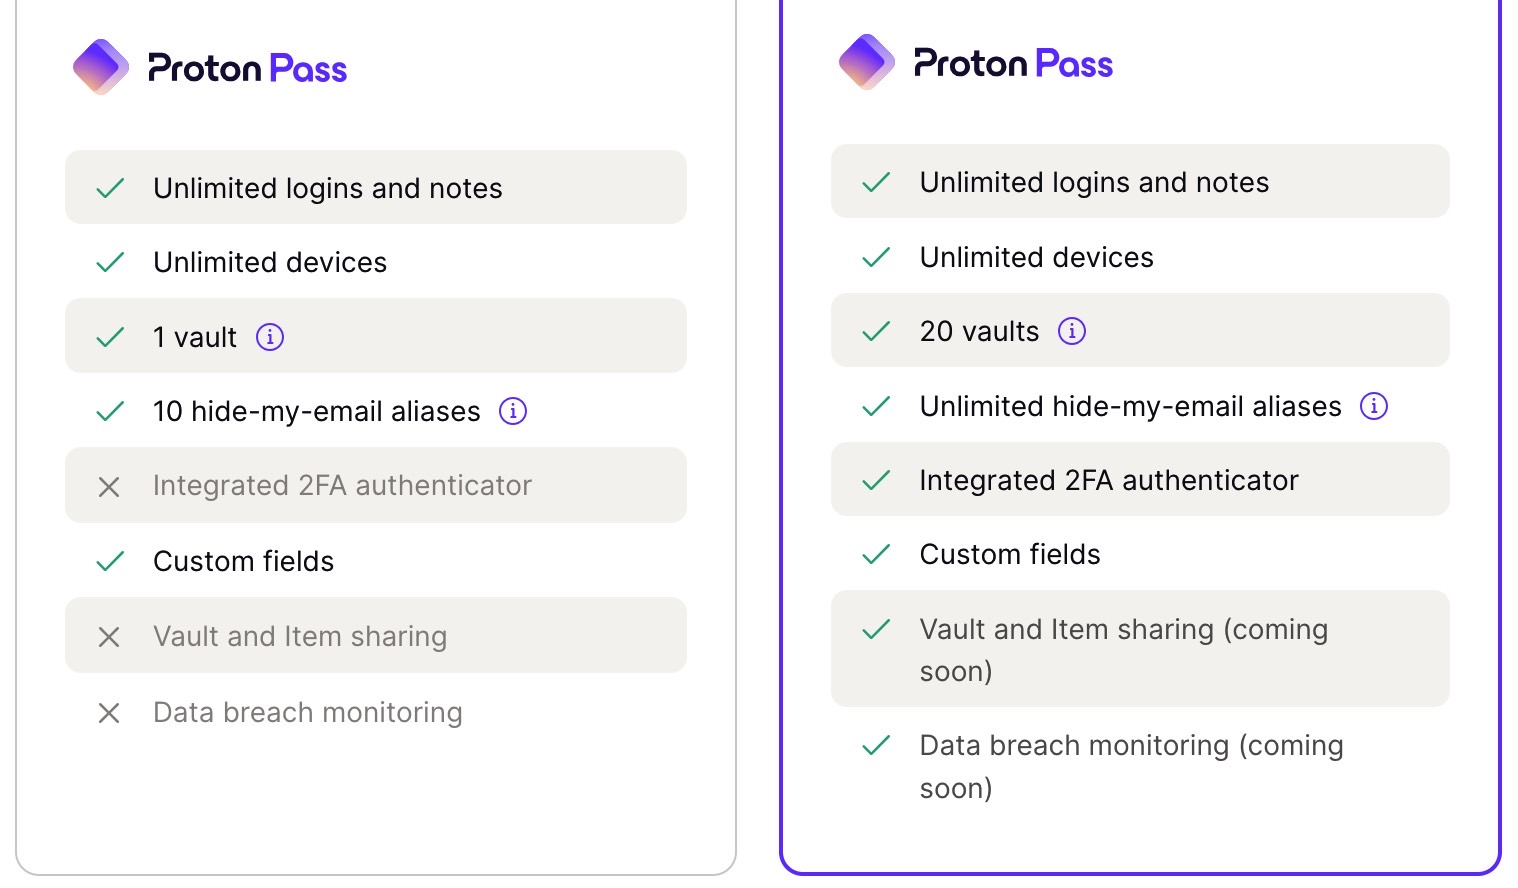 Proton Pass free vs. Proton Pass Plus features.